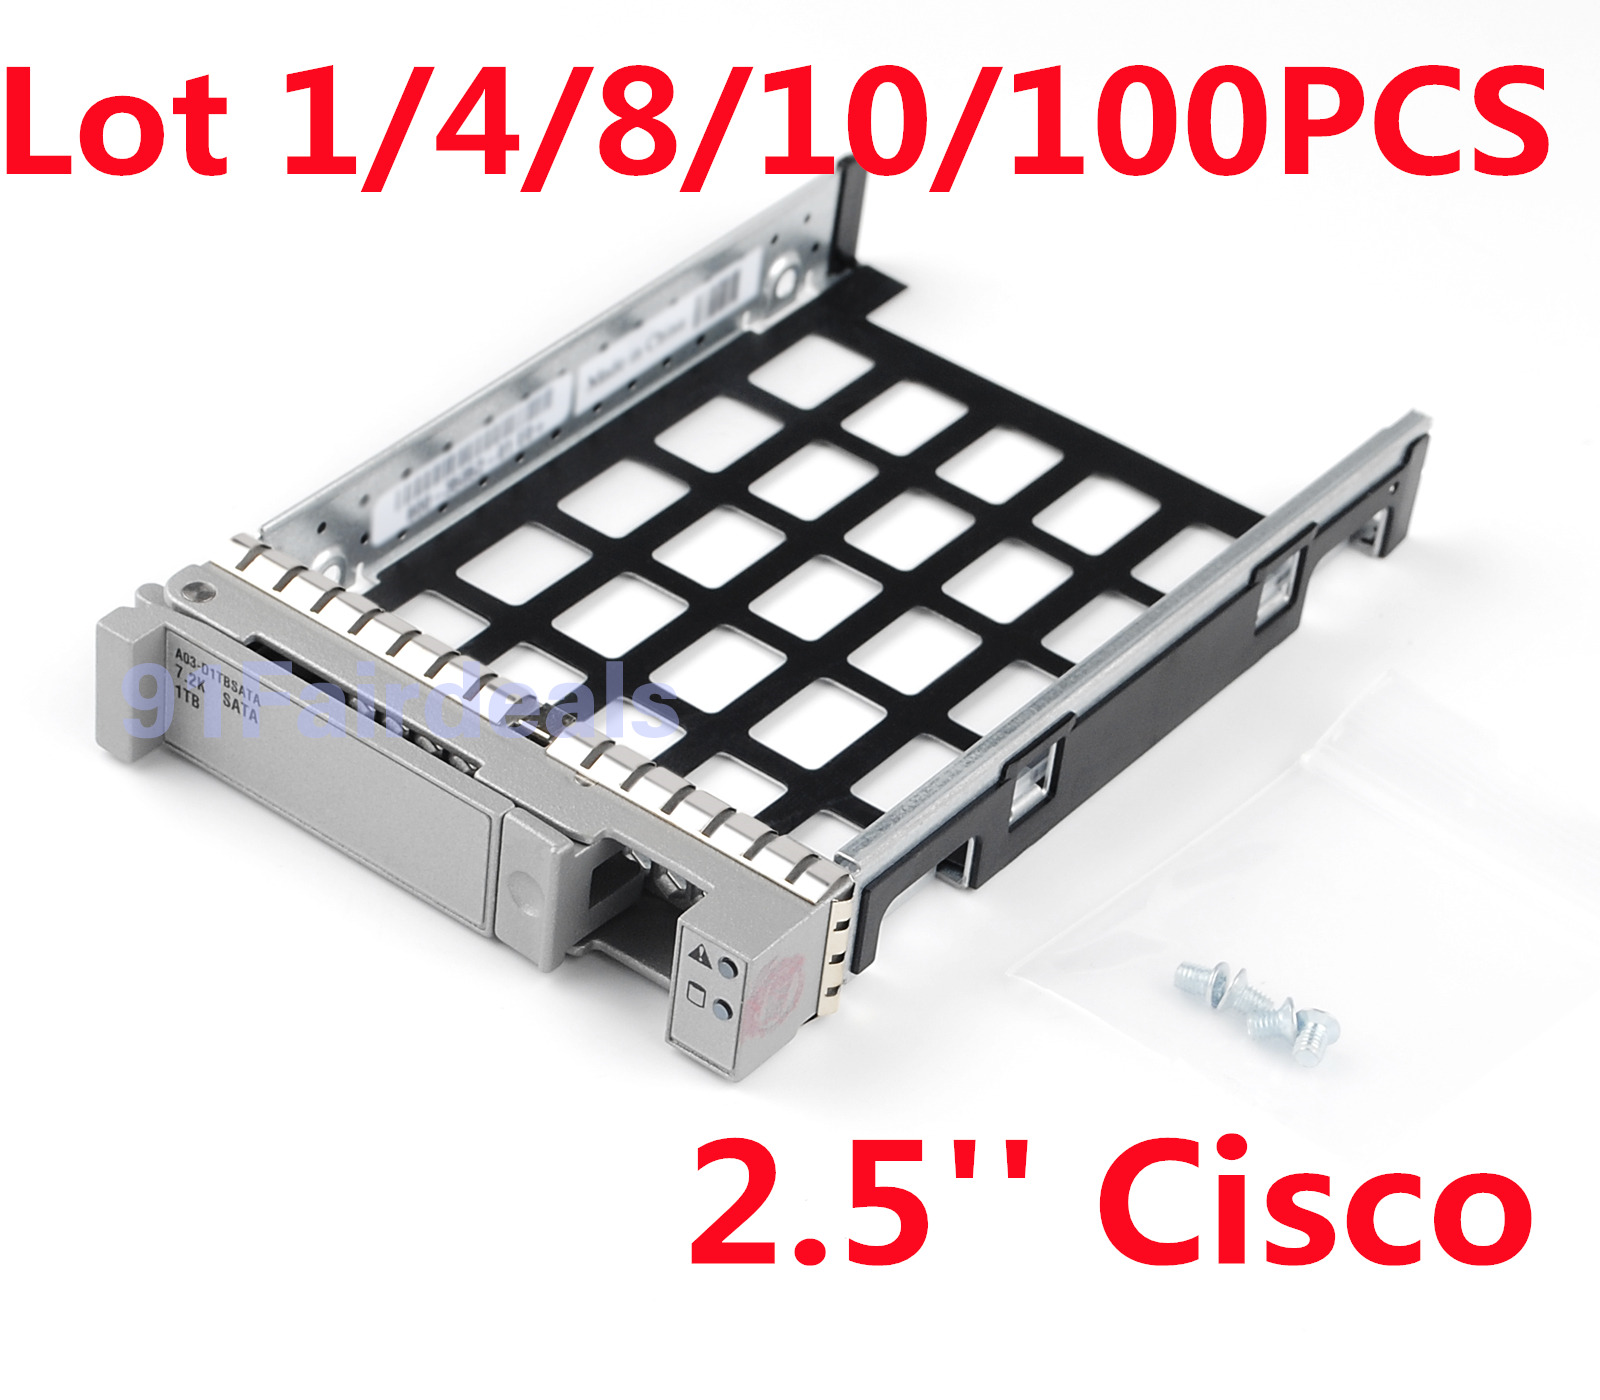 LOT 800-35052-01 Cisco UCS C220 C240 C460 M2/M3/M4 SAS/SATA 2.5'' HDD Tray Caddy